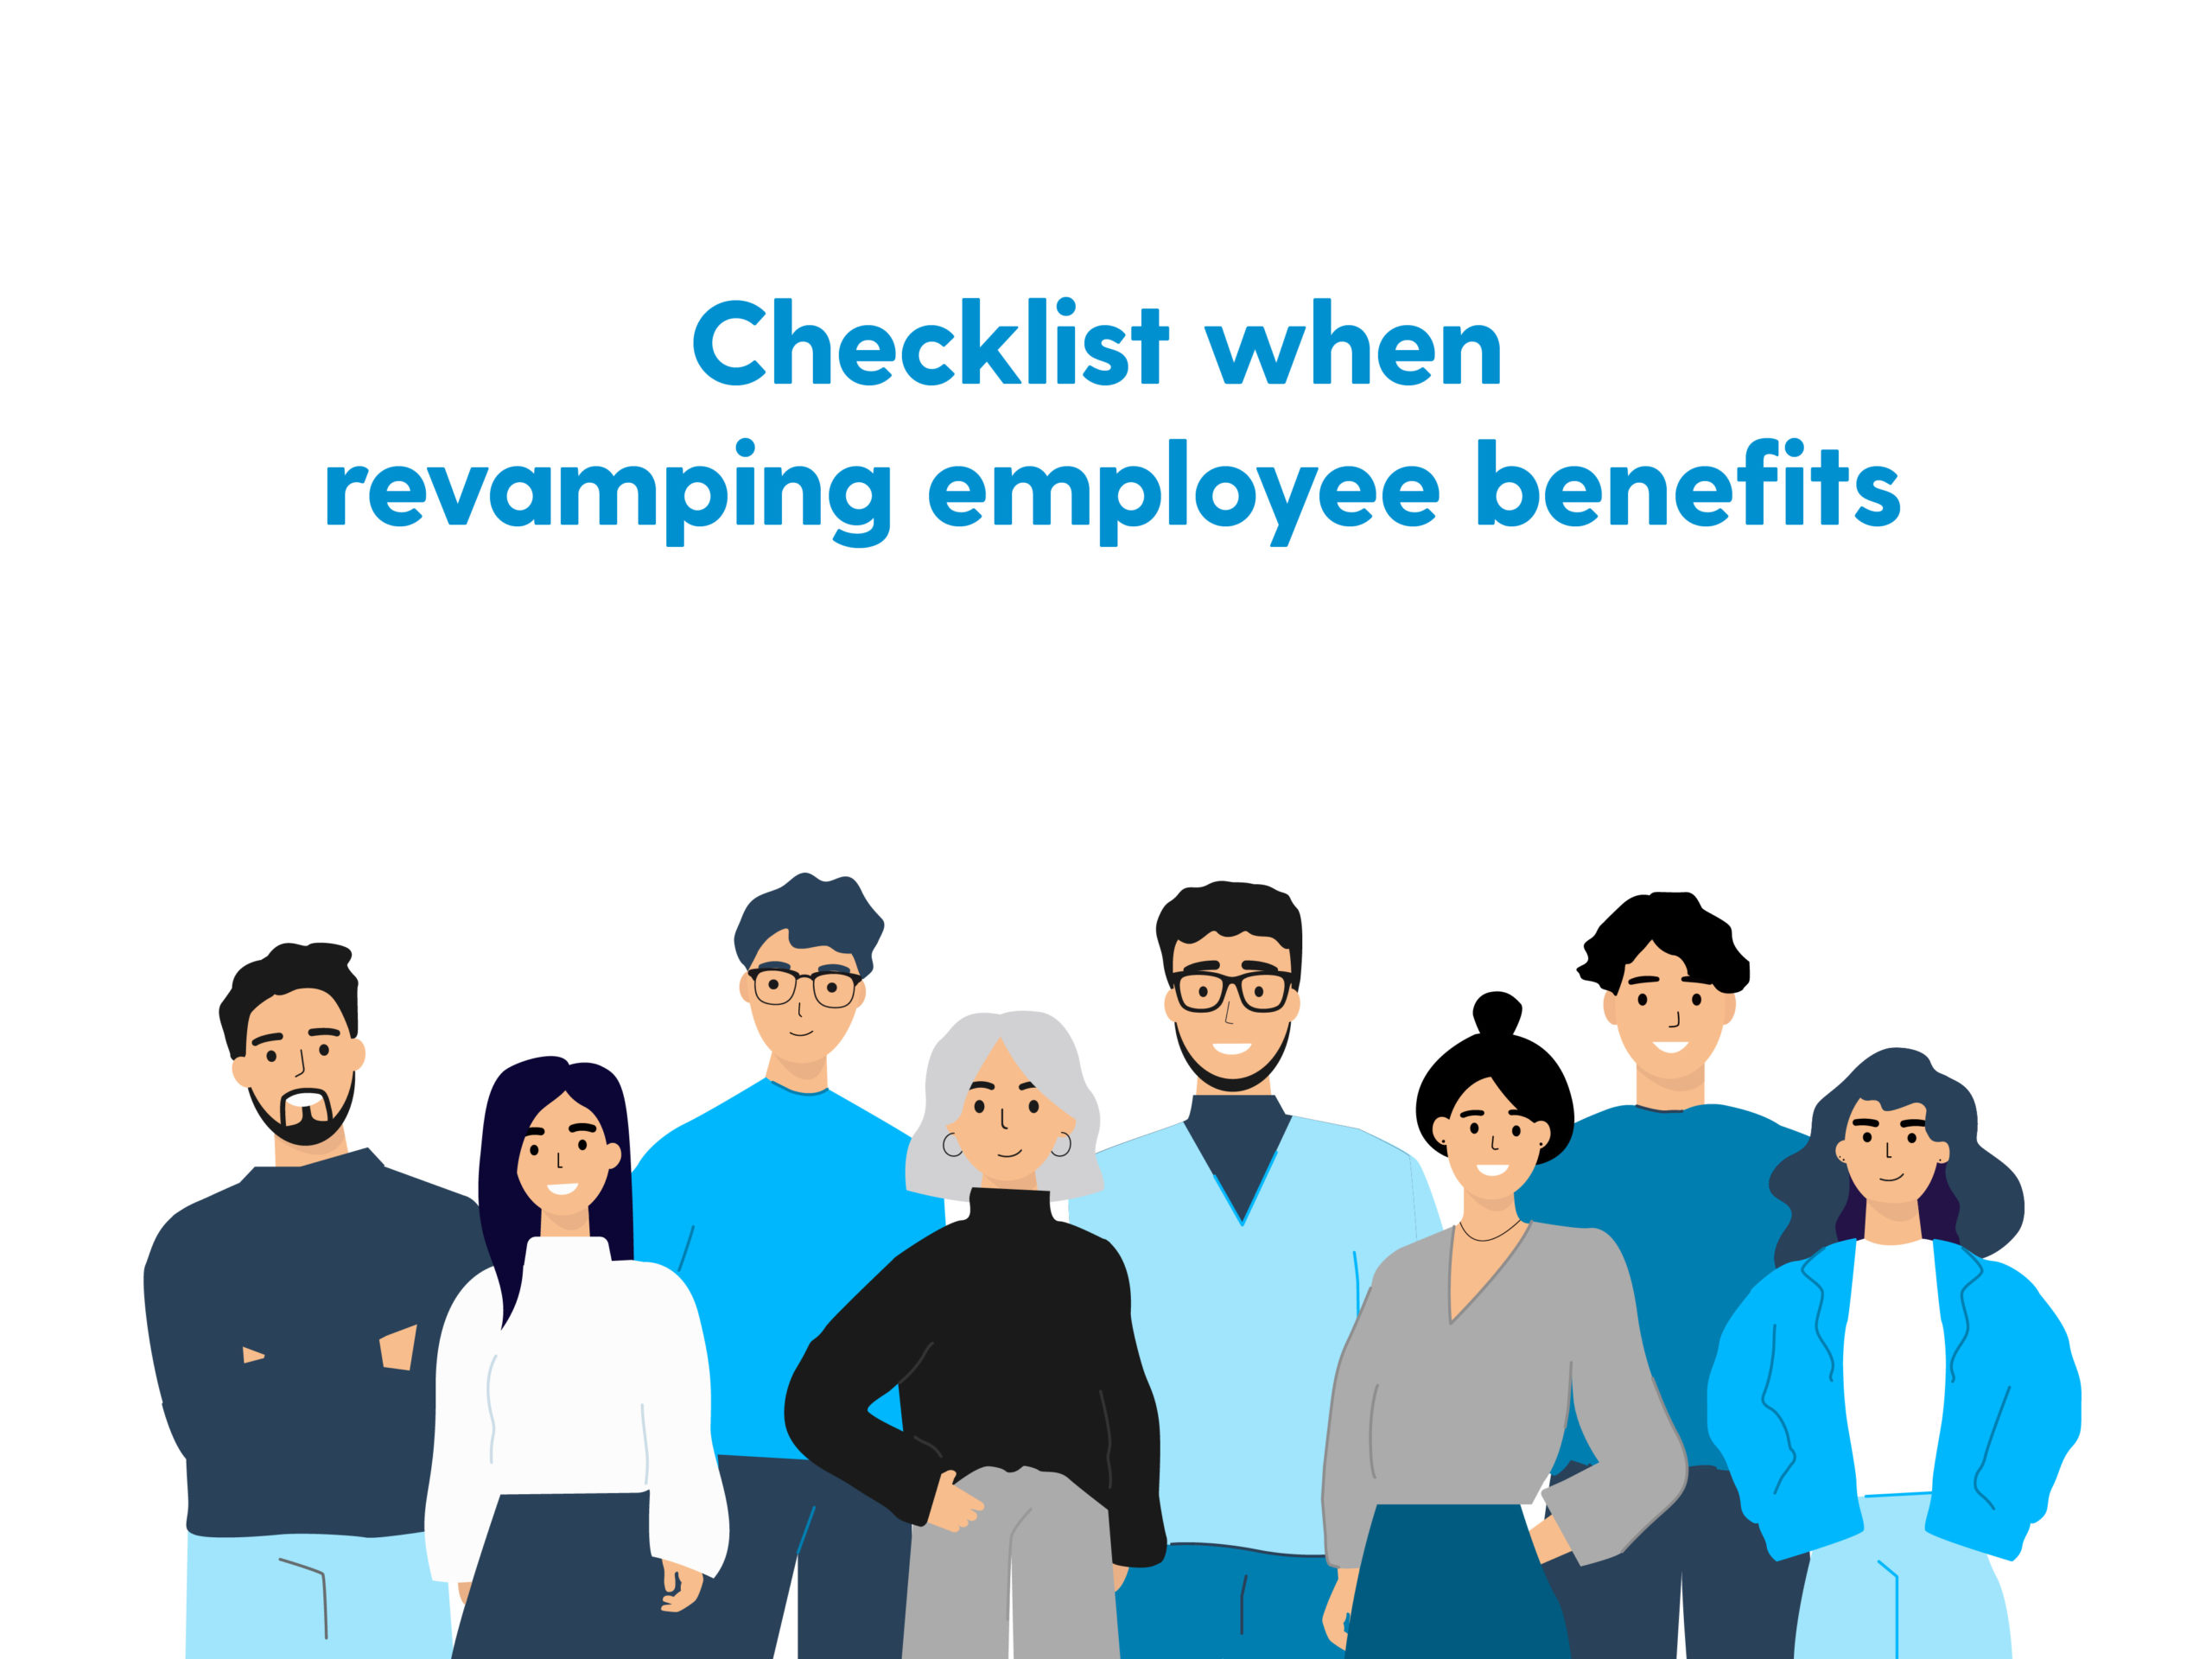 Checklist when revamping benefits